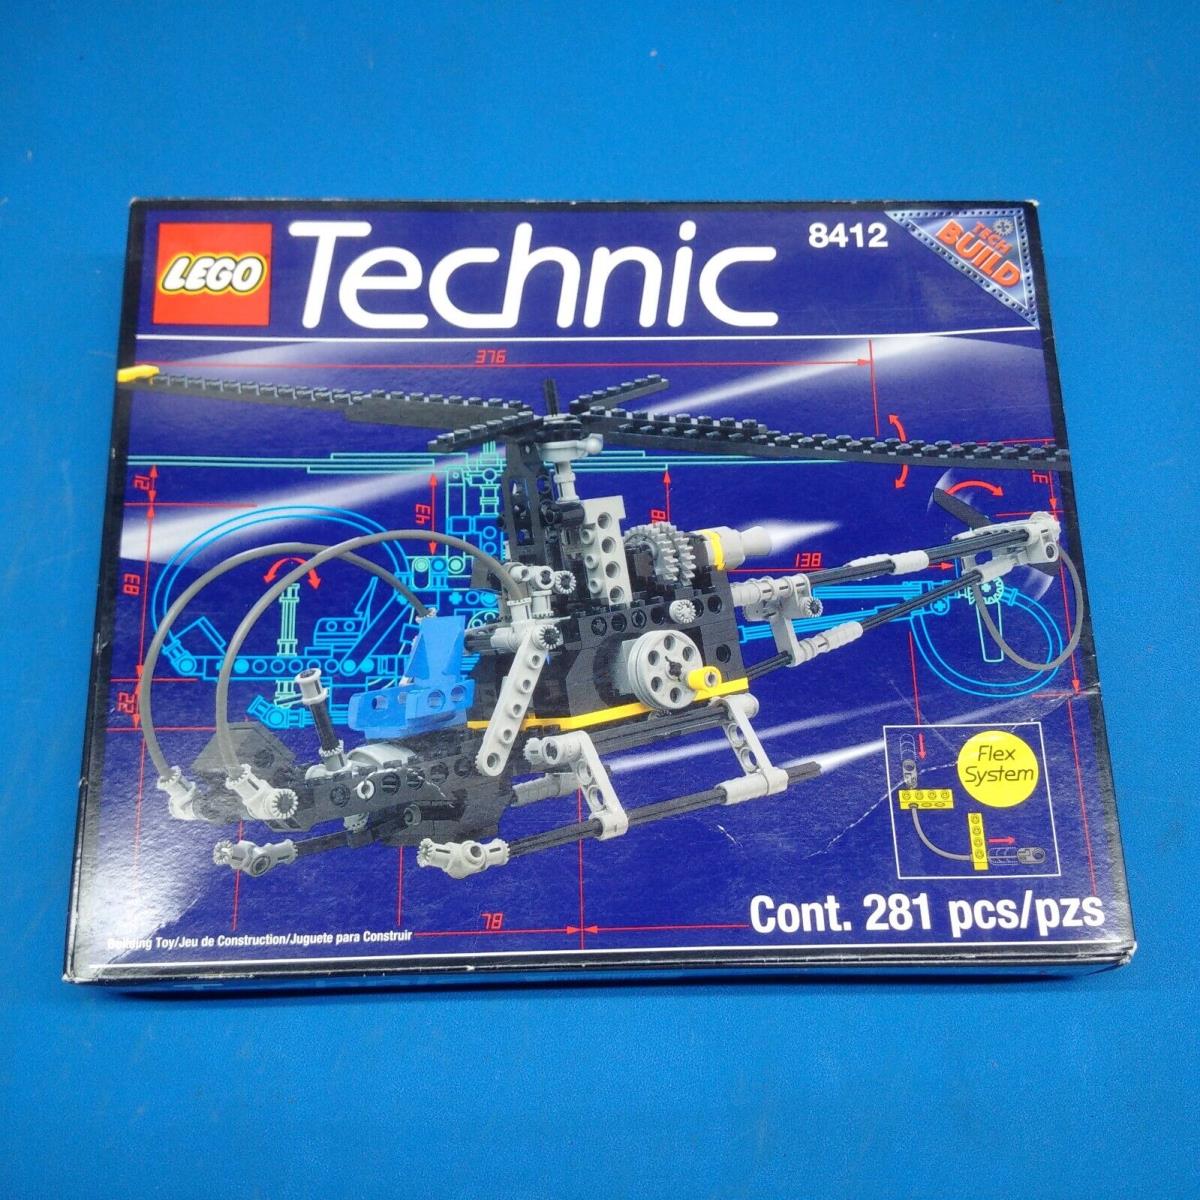 Lego Technic Nighthawk 8412 - Shelf Worn Box - Vintage 1995